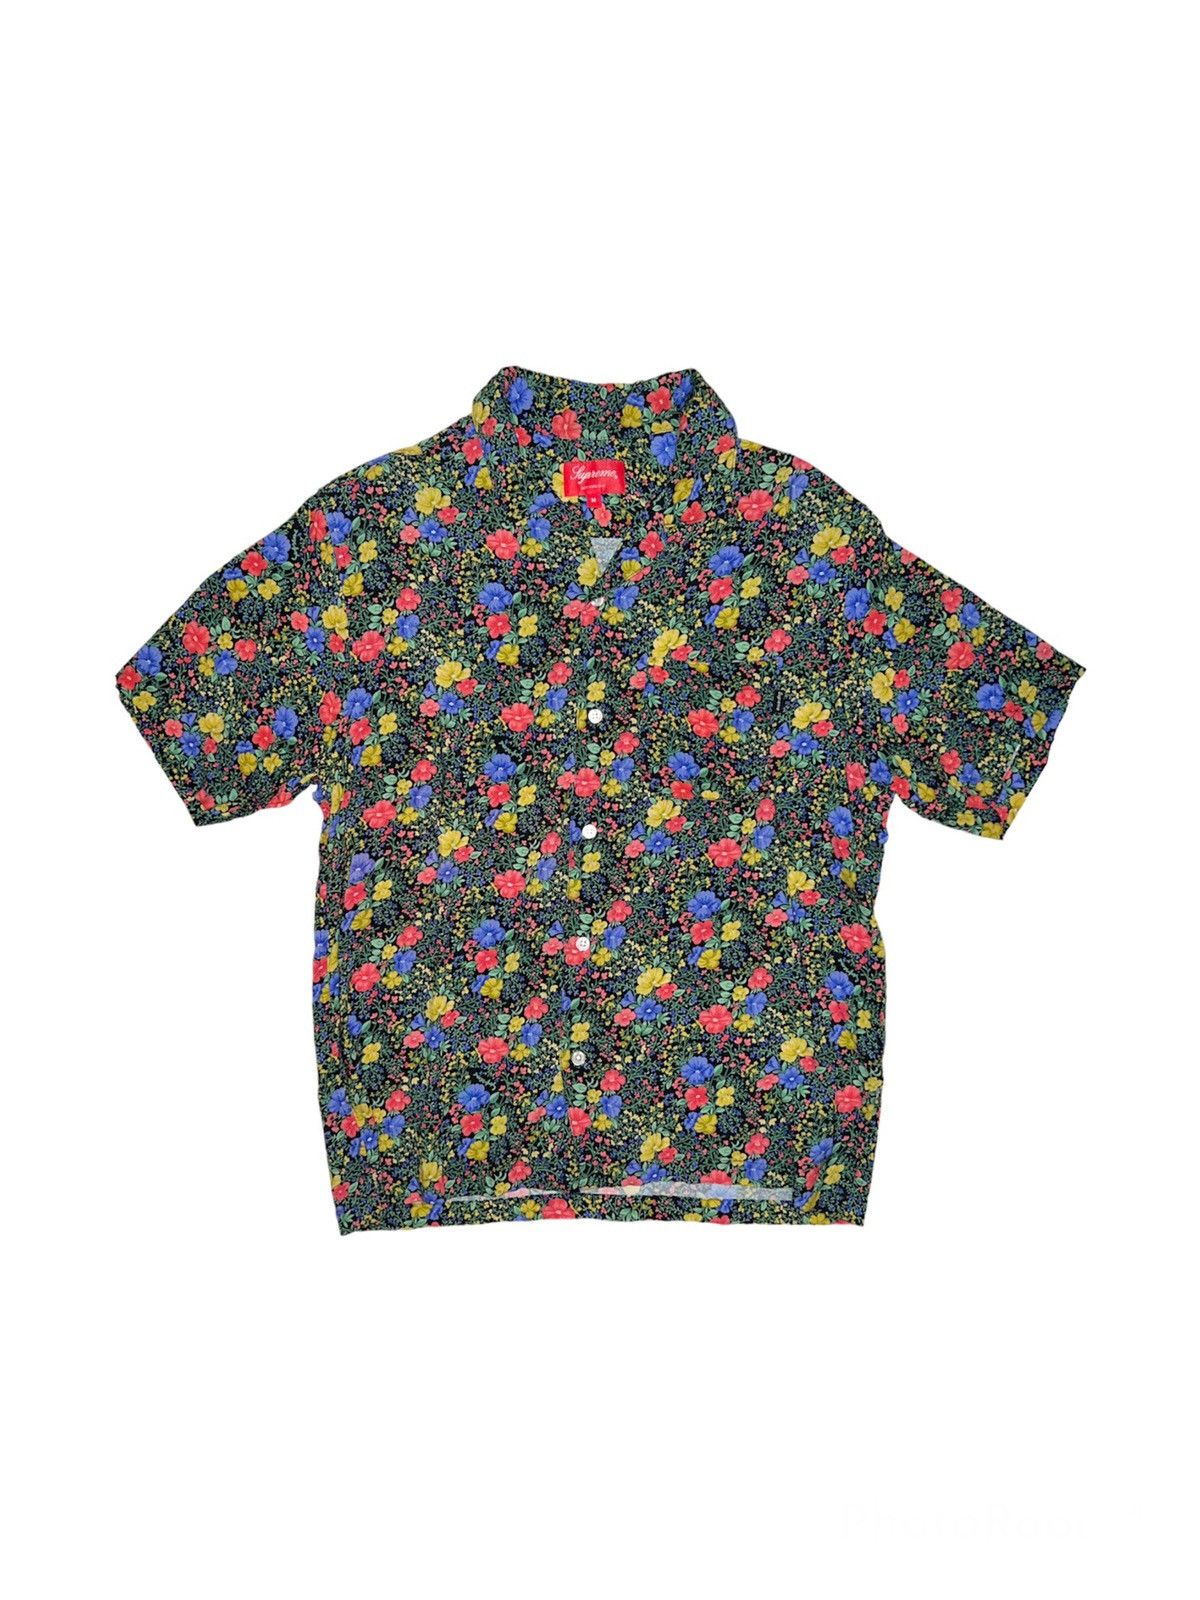 Supreme Supreme Mini Floral Rayon Shirt | Grailed